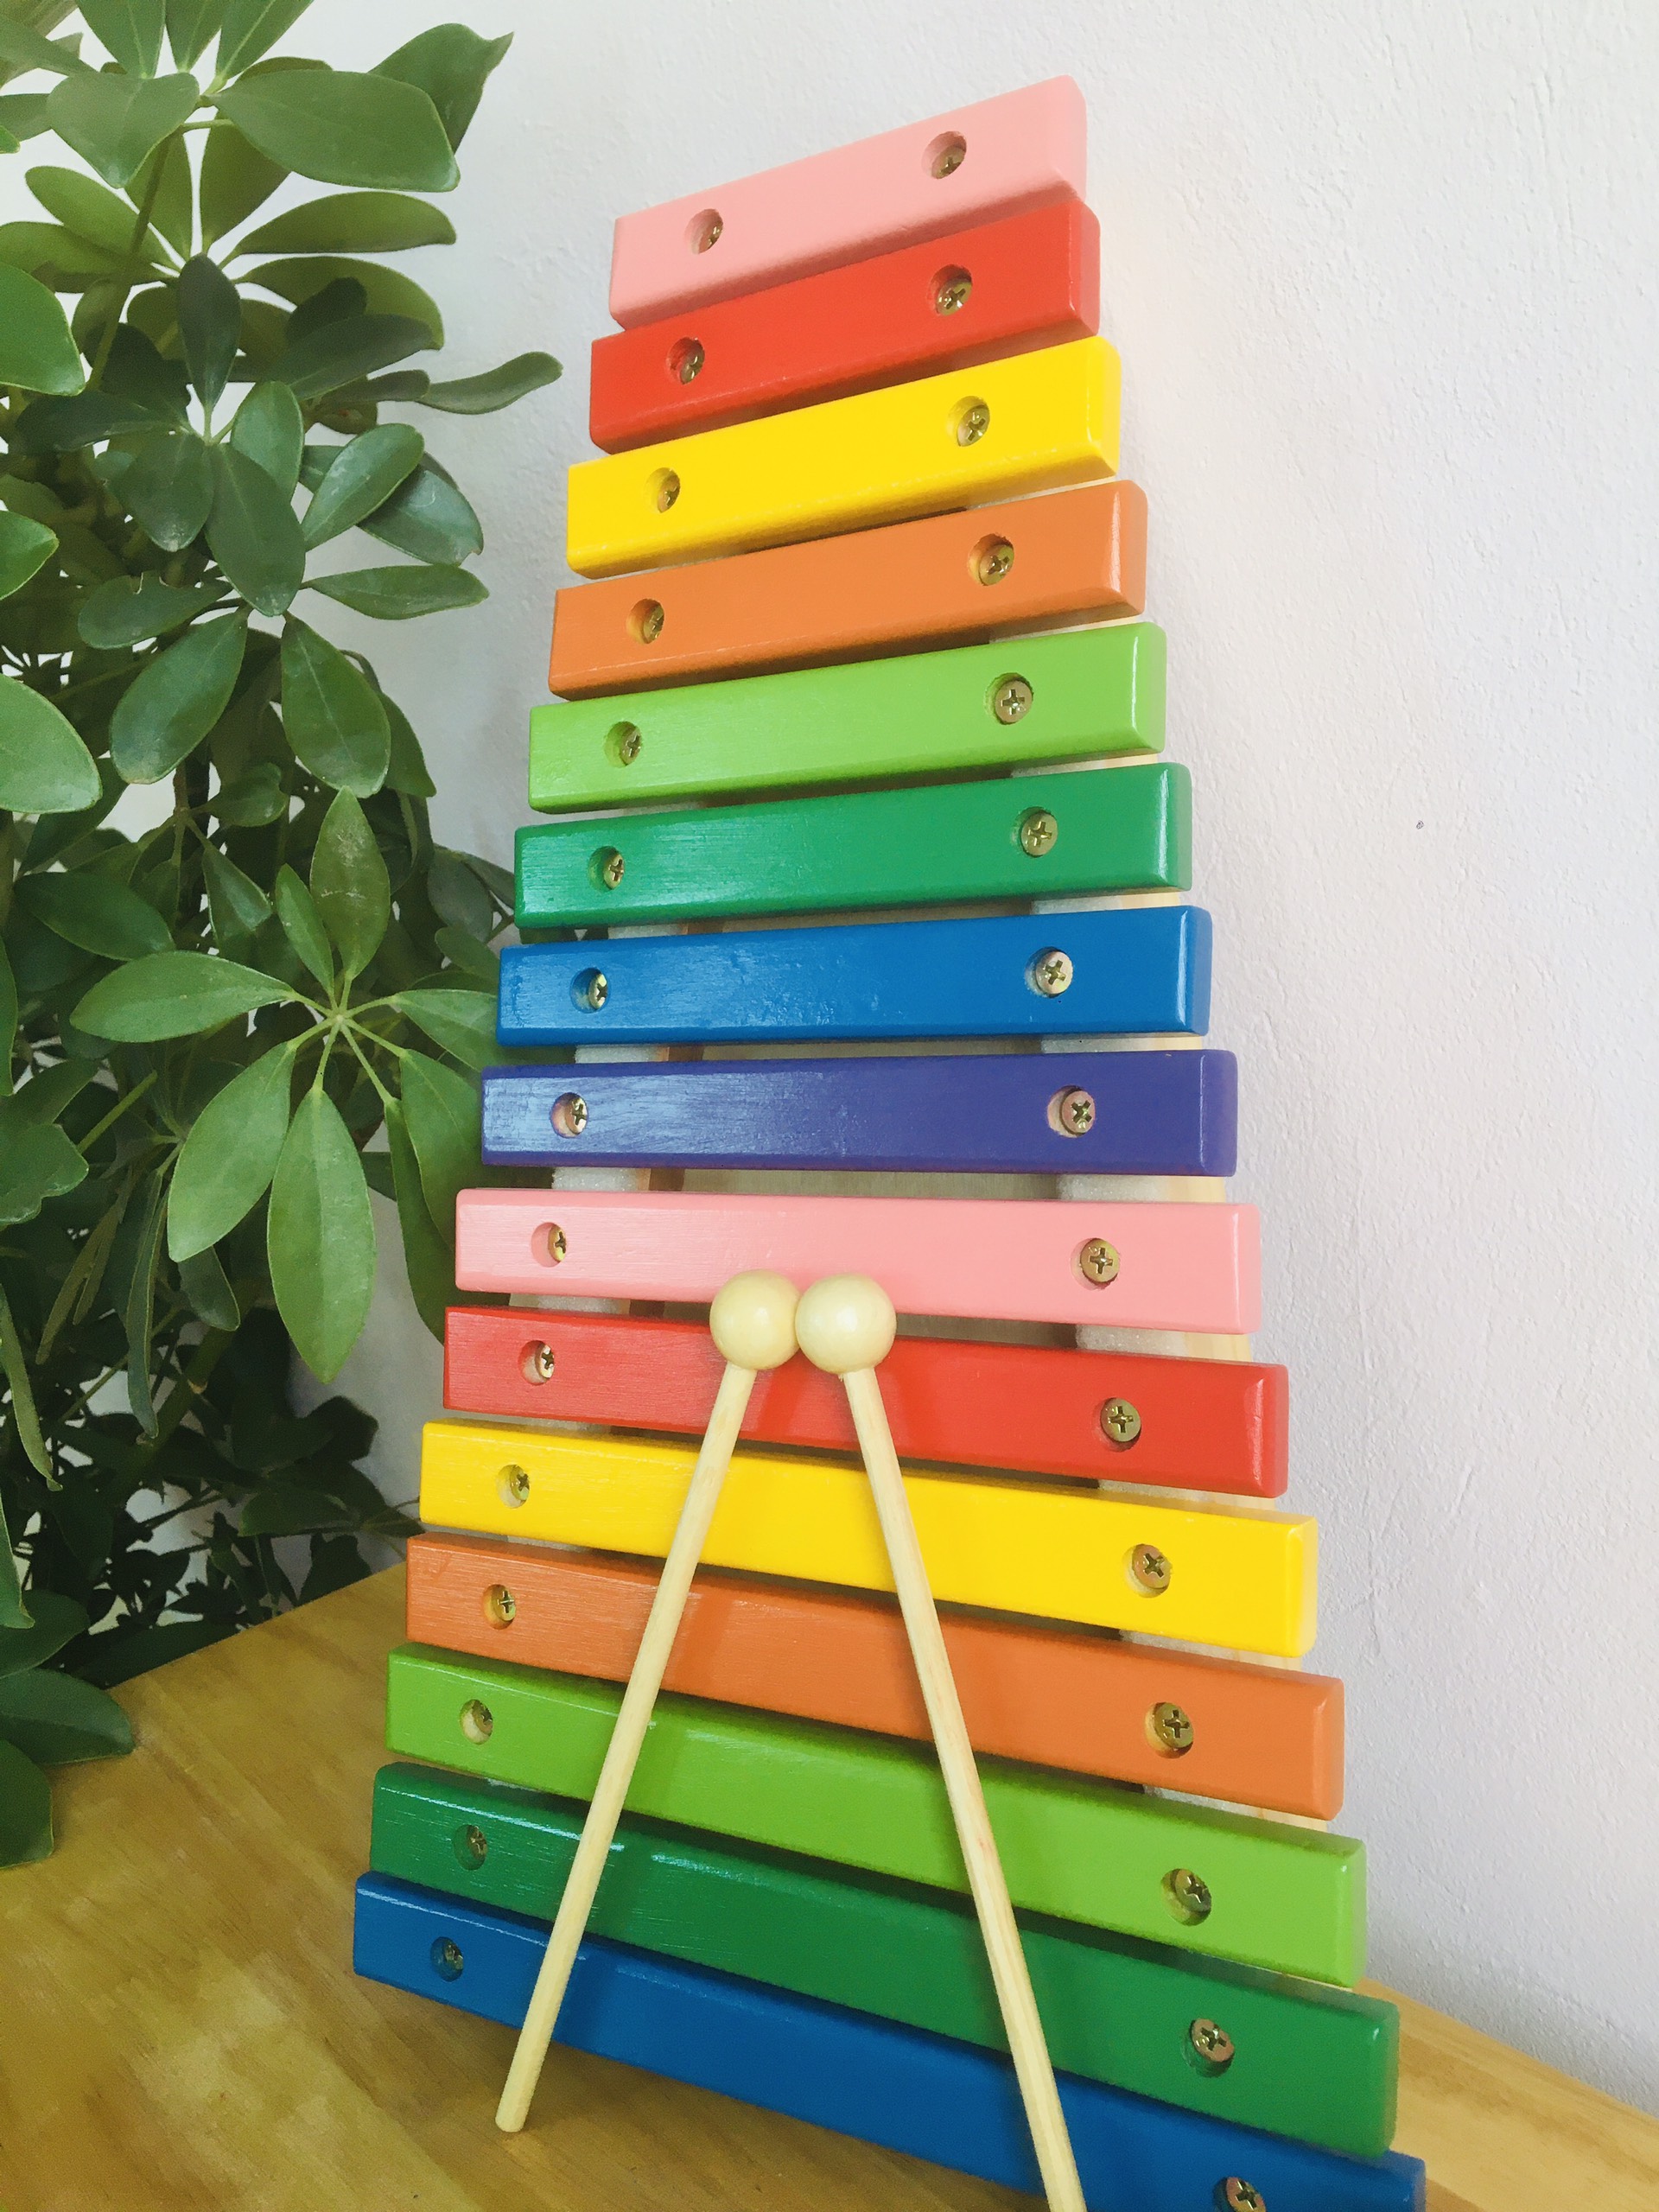 Đồ chơi đàn xylophone gỗ 15 thanh loại to cao cấp, đồ chơi đàn gỗ nhạc cụ giải trí rèn kĩ năng giáo dục cho bé